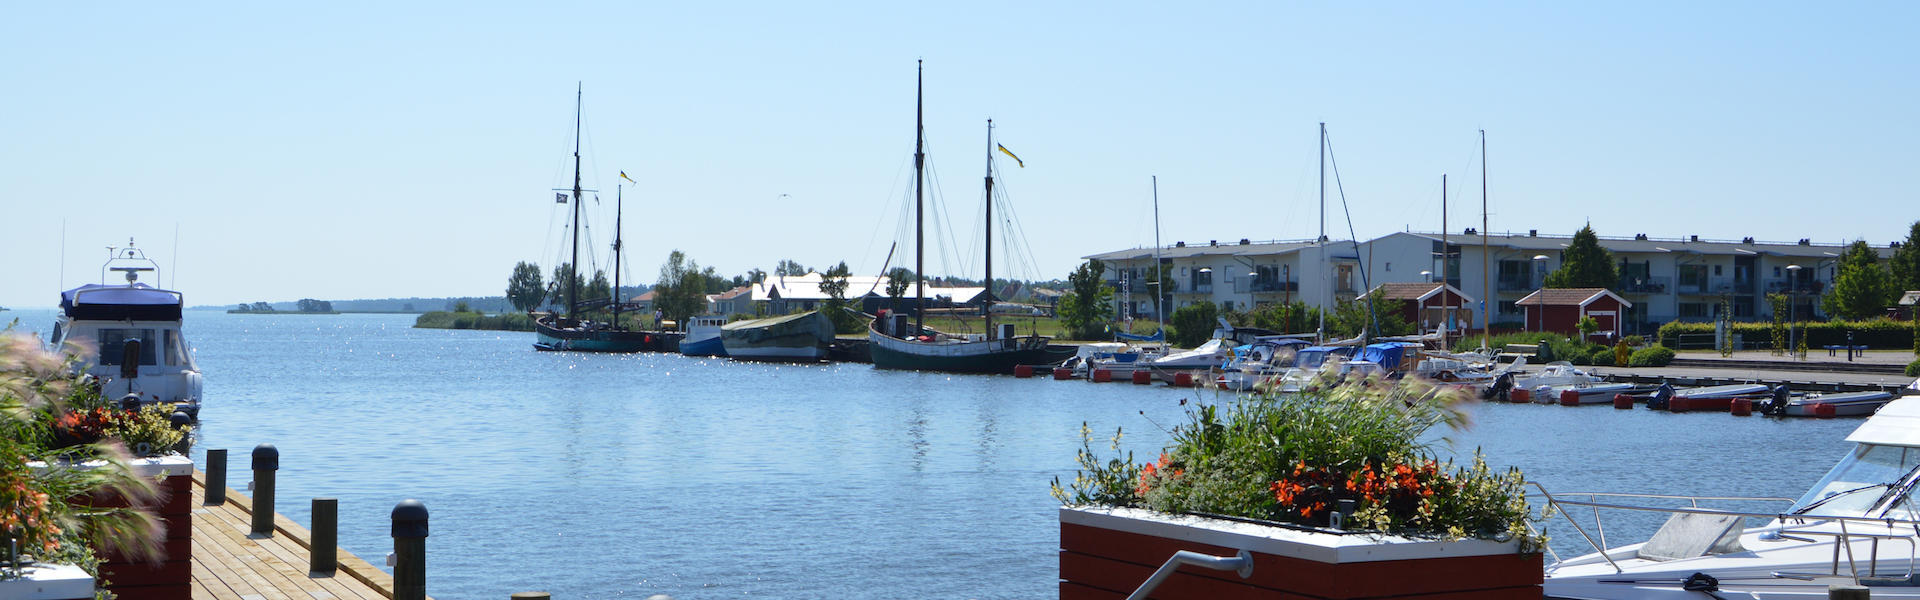 Vy över hamnen i Mönsterås